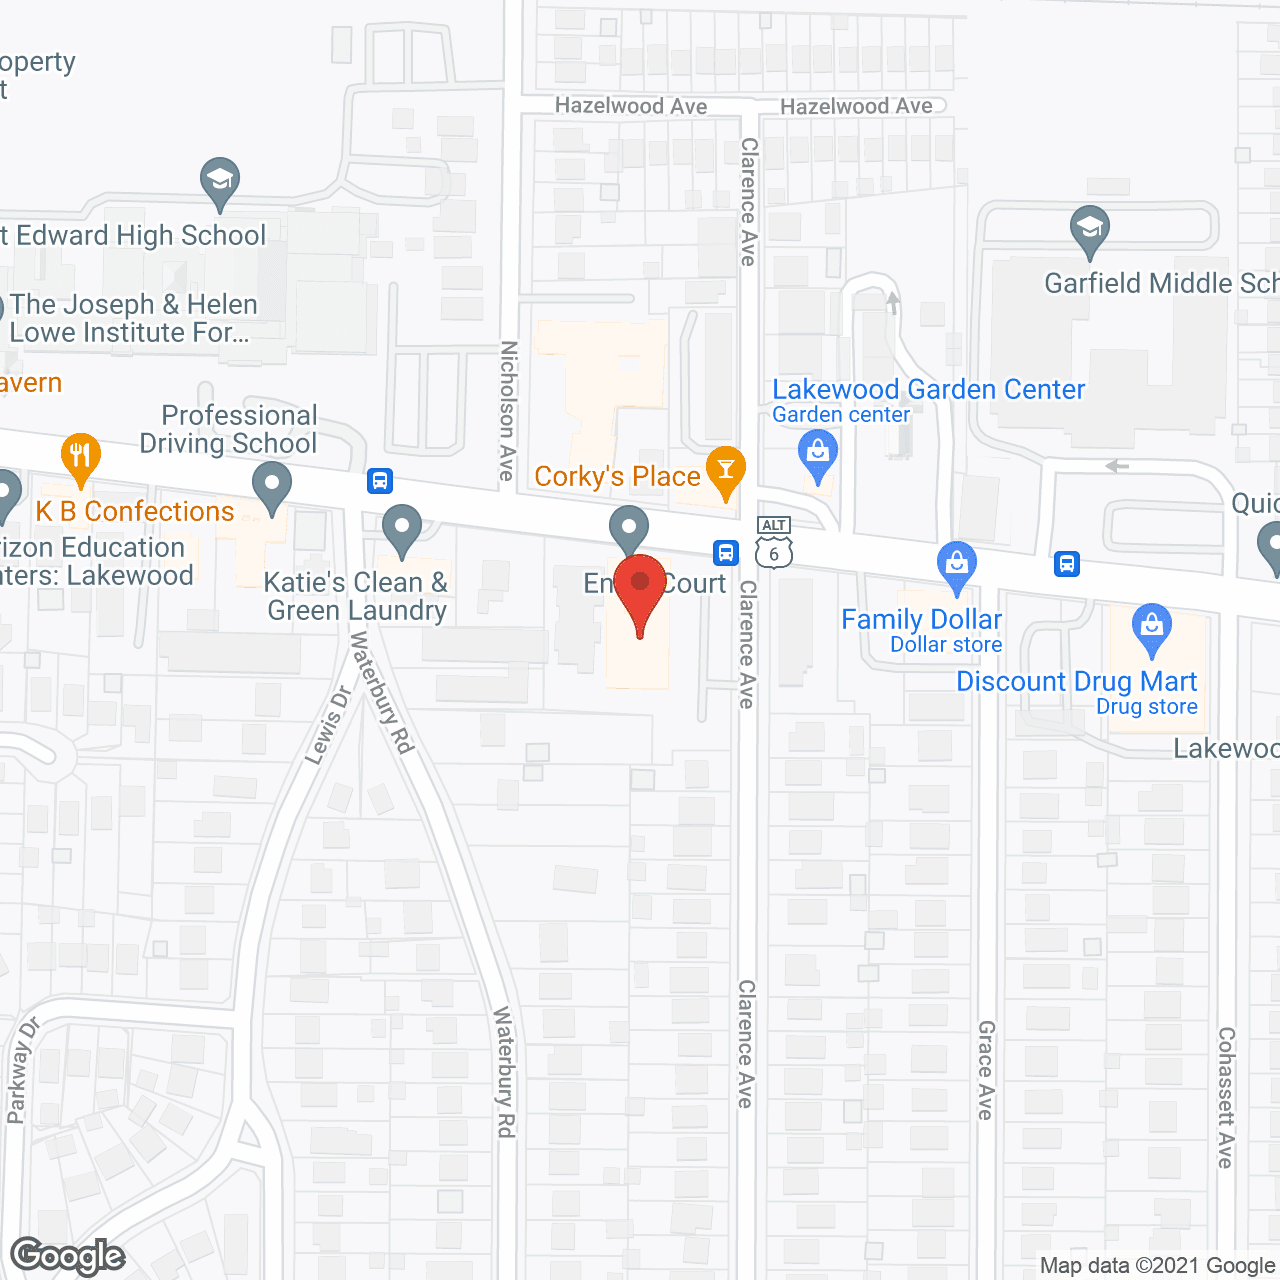 Ennis Court in google map